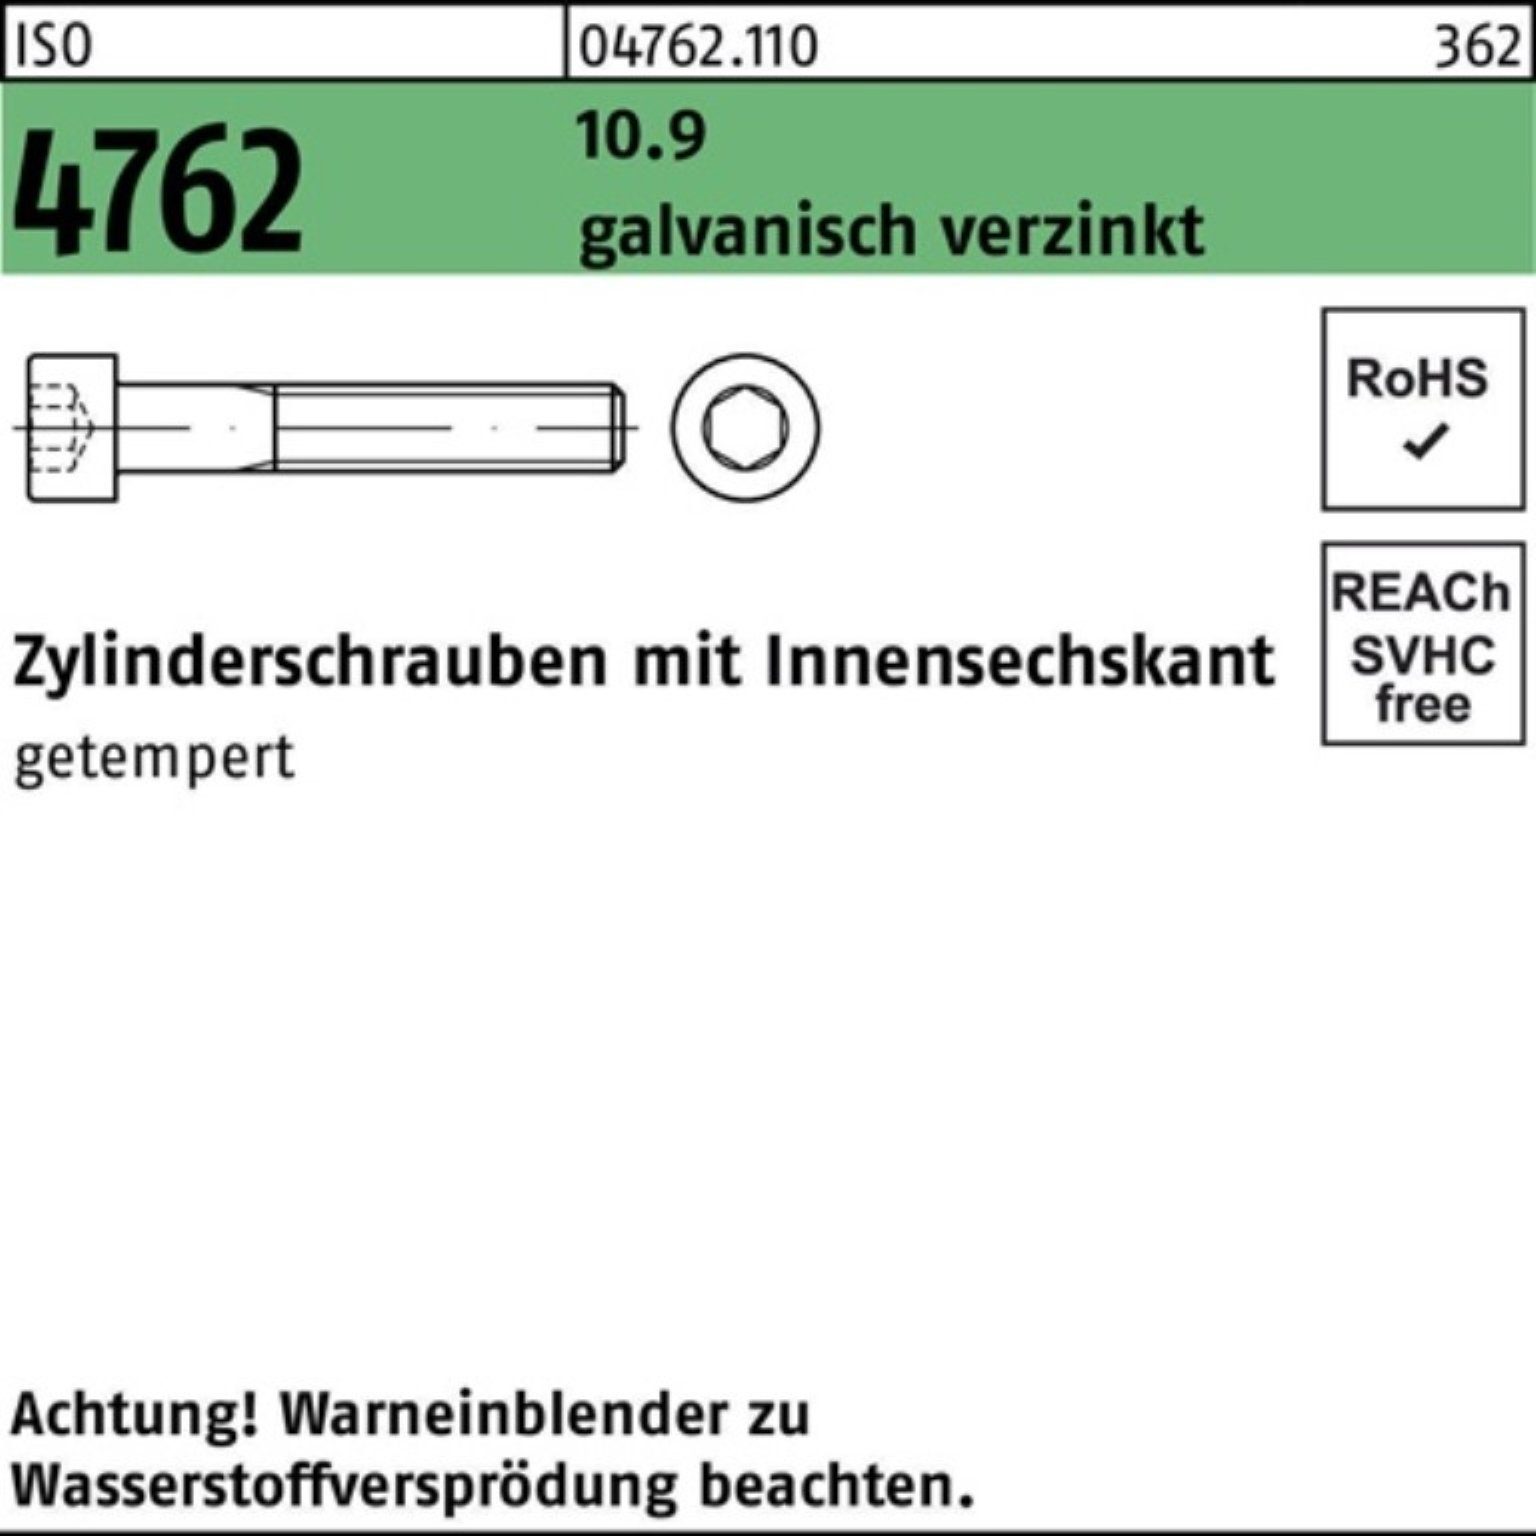 Reyher Zylinderschraube 100er Pack Zylinderschraube Innen-6kt M20x190 10.9 galv.verz. 4762 ISO